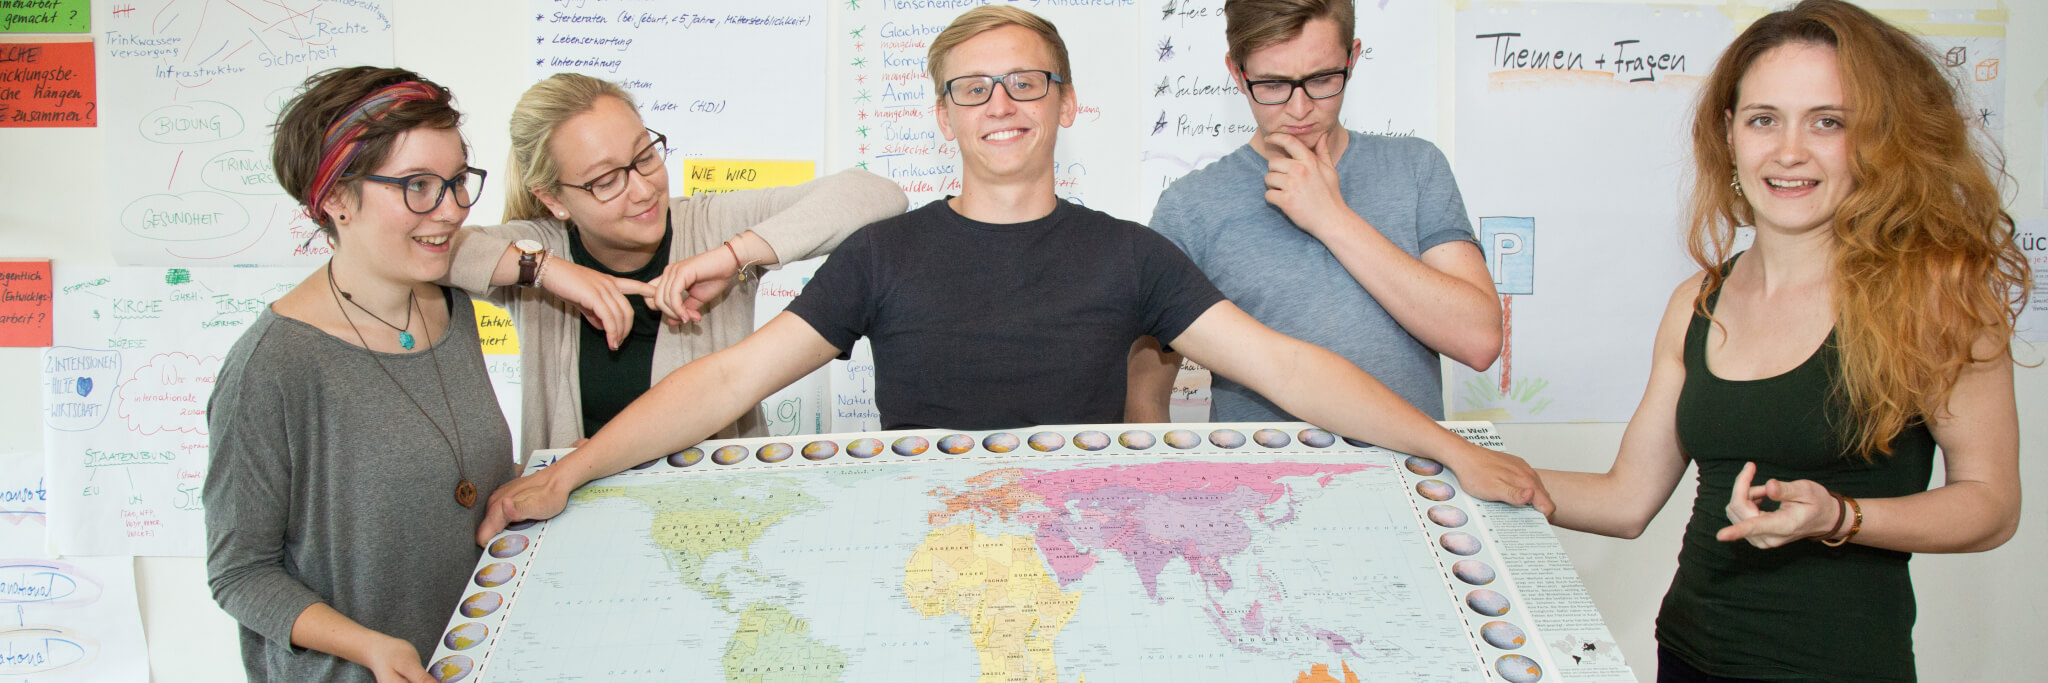 Bild: 4 Freiwillige halten eine Weltkarte